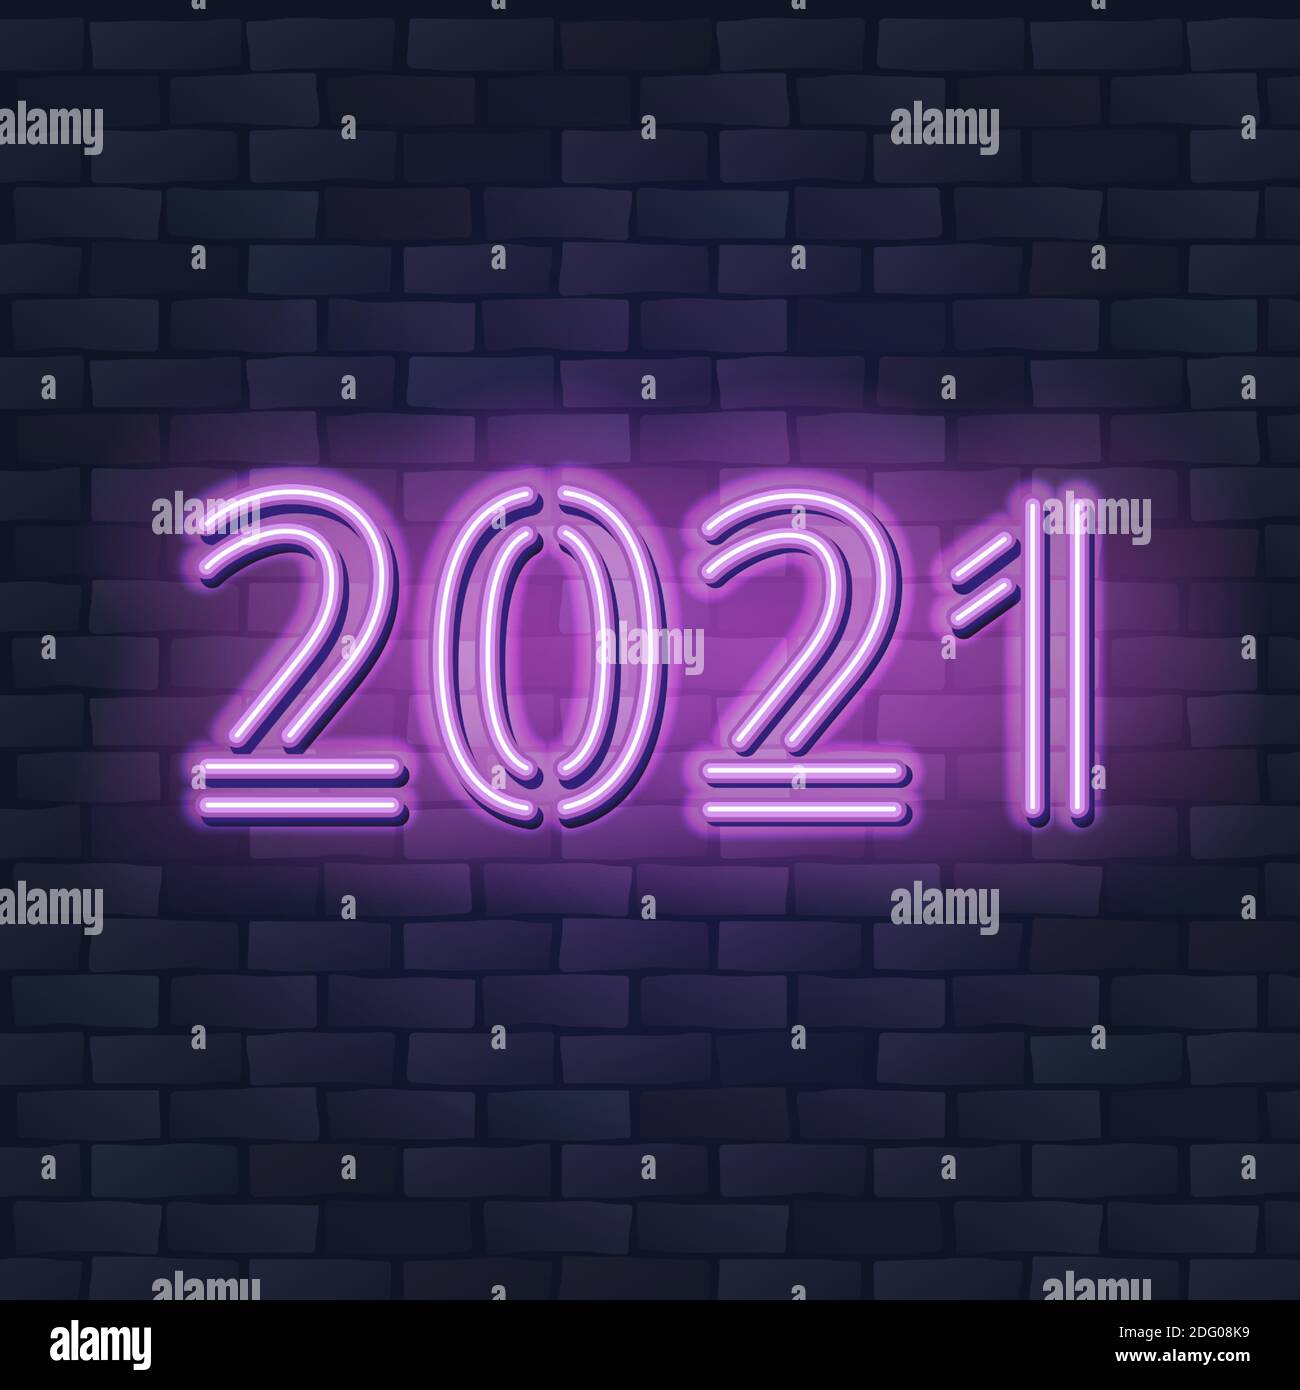 2021 concepto de año Nuevo con luces de neón de colores. Elementos de diseño retro para presentaciones, volantes, folletos, pósters o postales. Ilustración vectorial. Ilustración del Vector